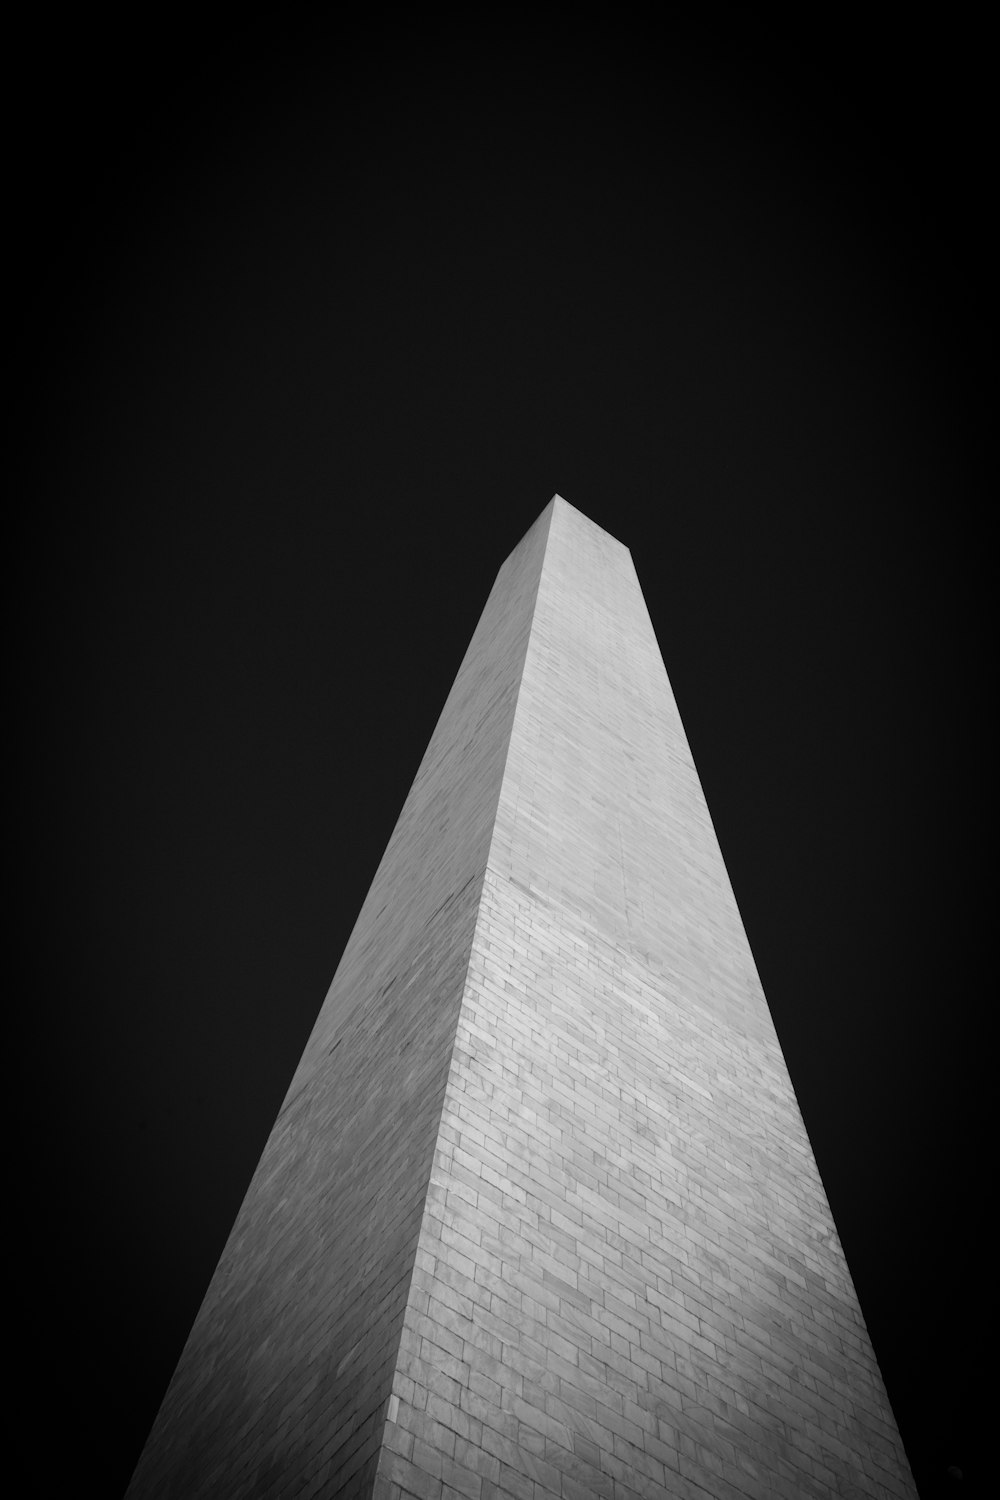 O Monumento de Washington em Preto e Branco